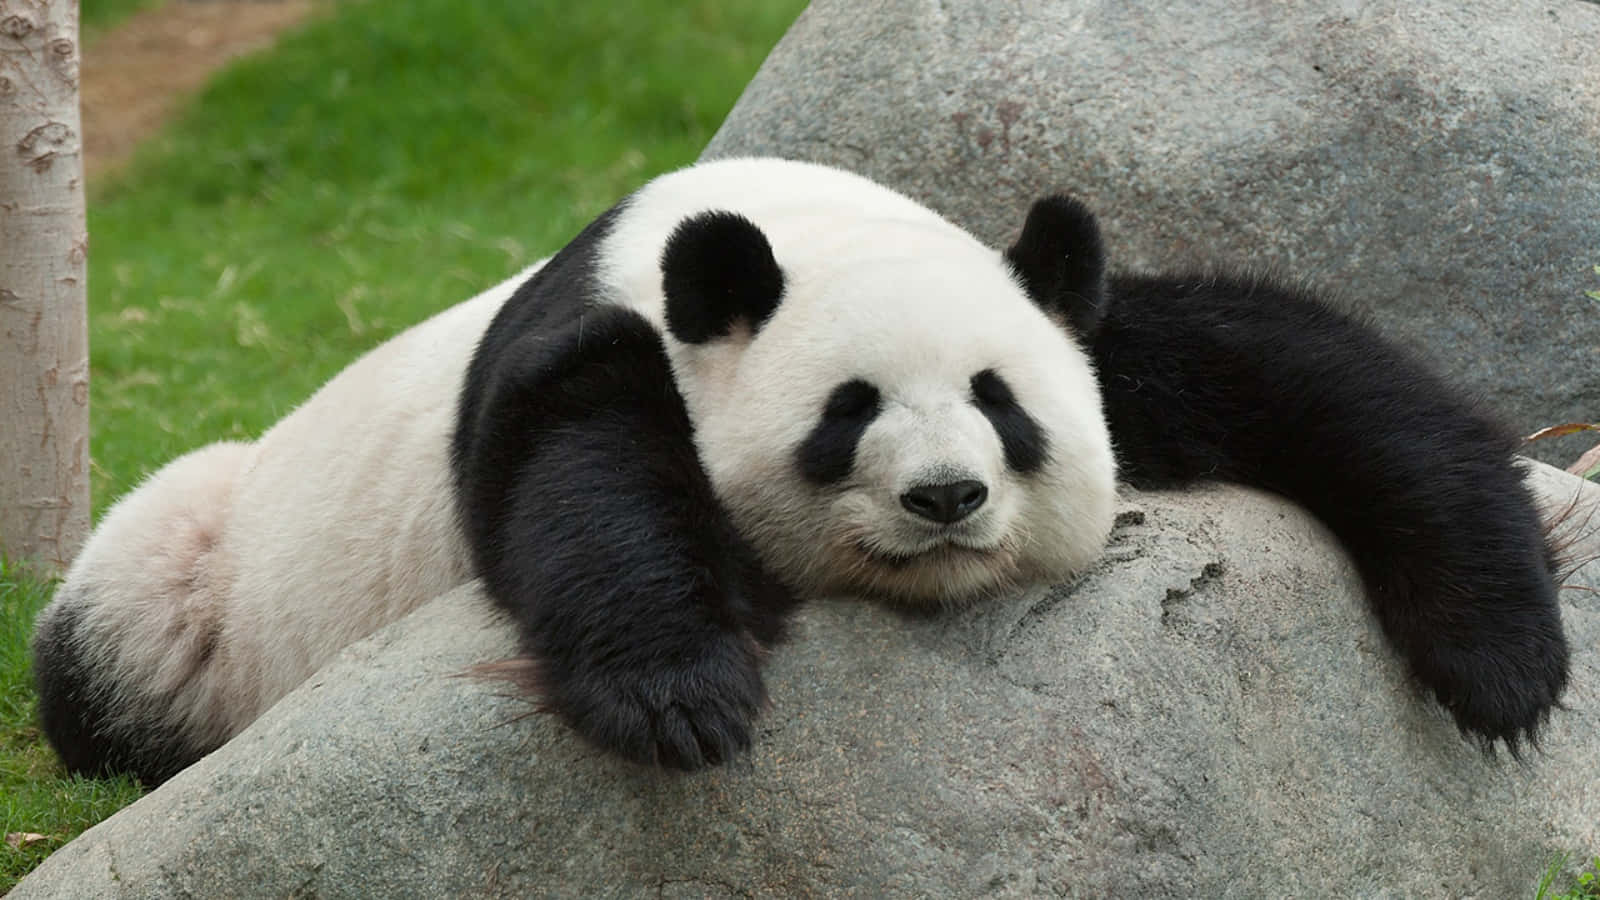 Look how cute this panda is!